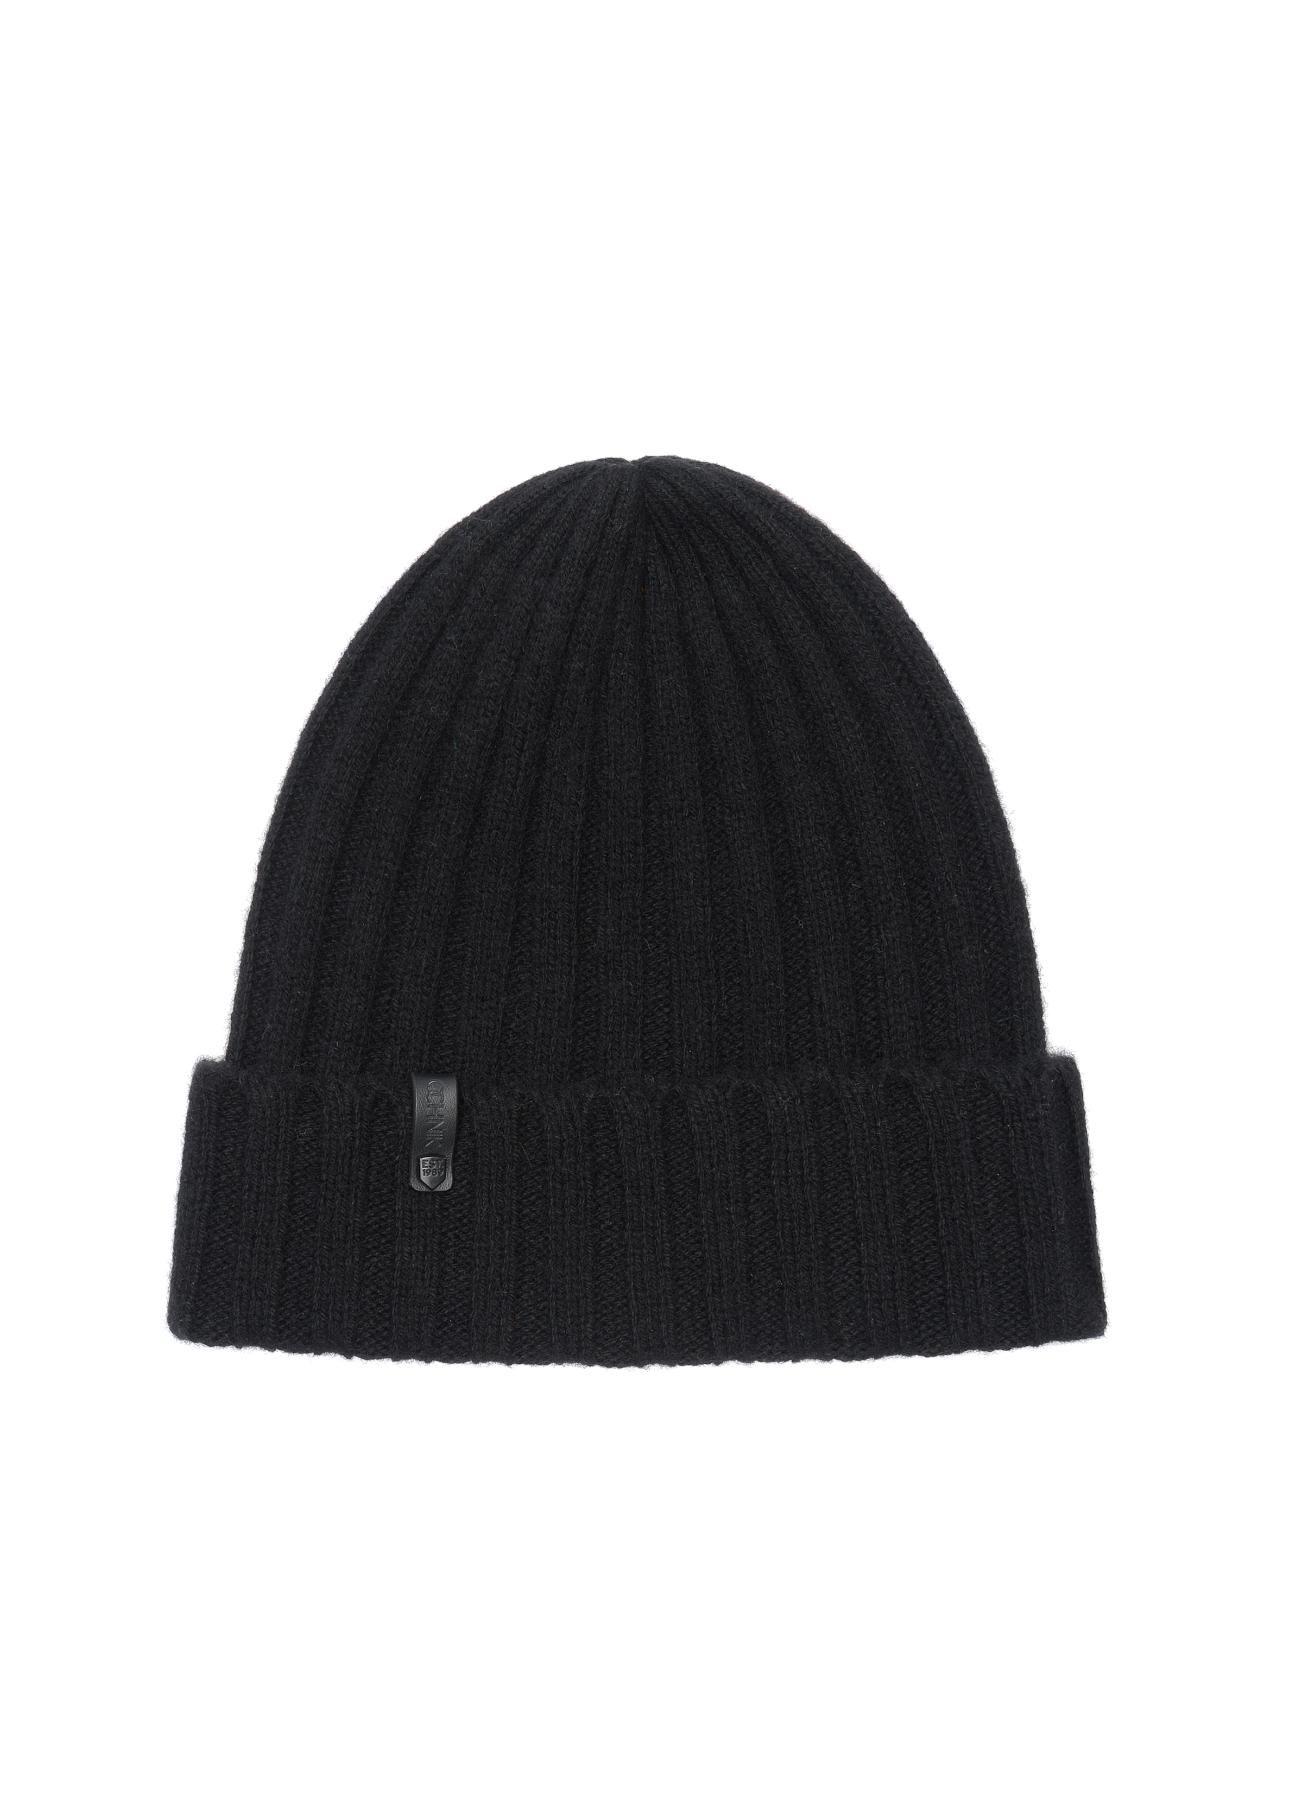 Czarna czapka zimowa męska CZAMT-0033-99(Z23)